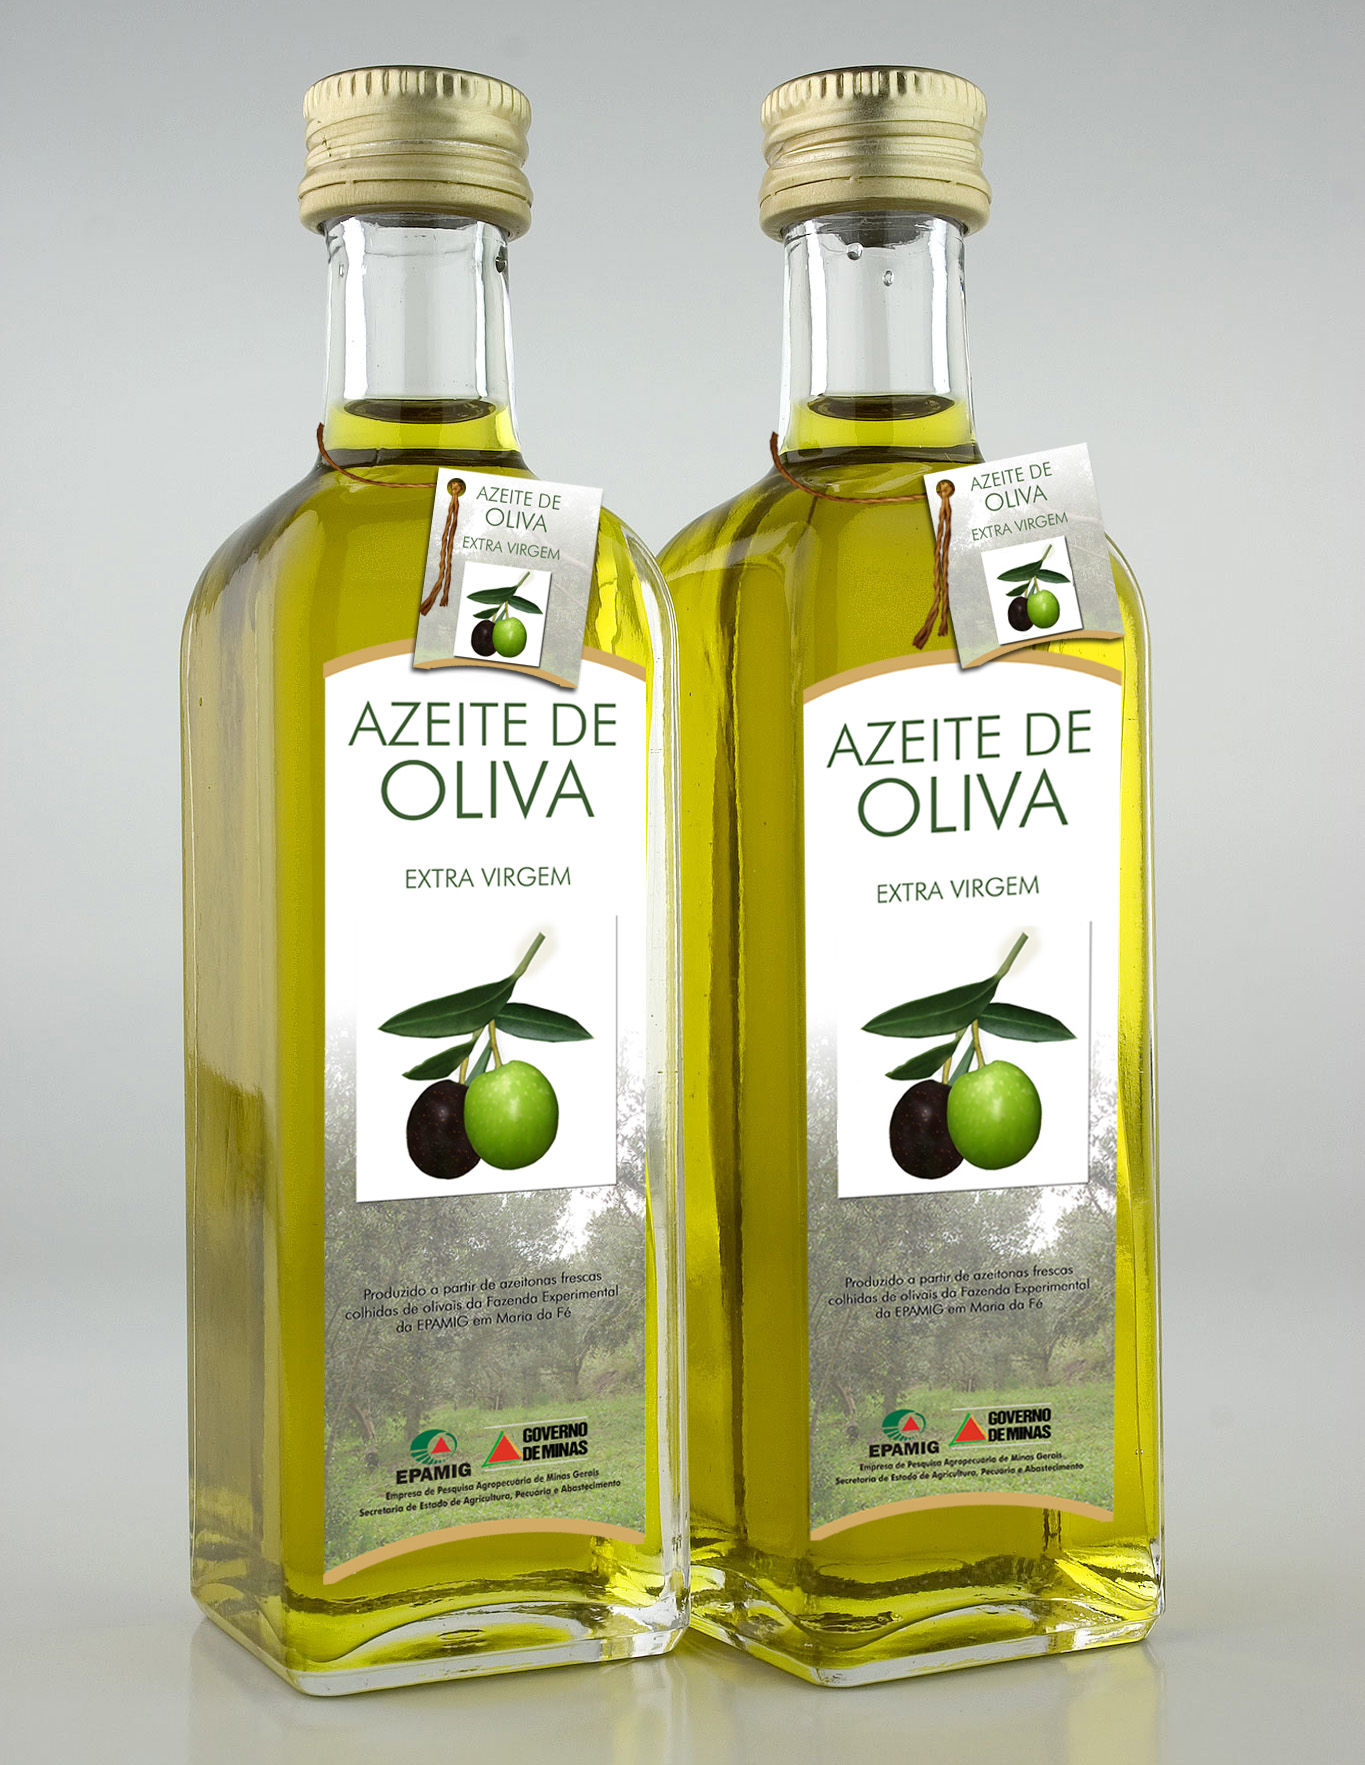 Оливковое масло колумб. Оливковое масло. Оливковое масло фирмы. Оливковое масло этикетка. Оливковое масло дизайн.